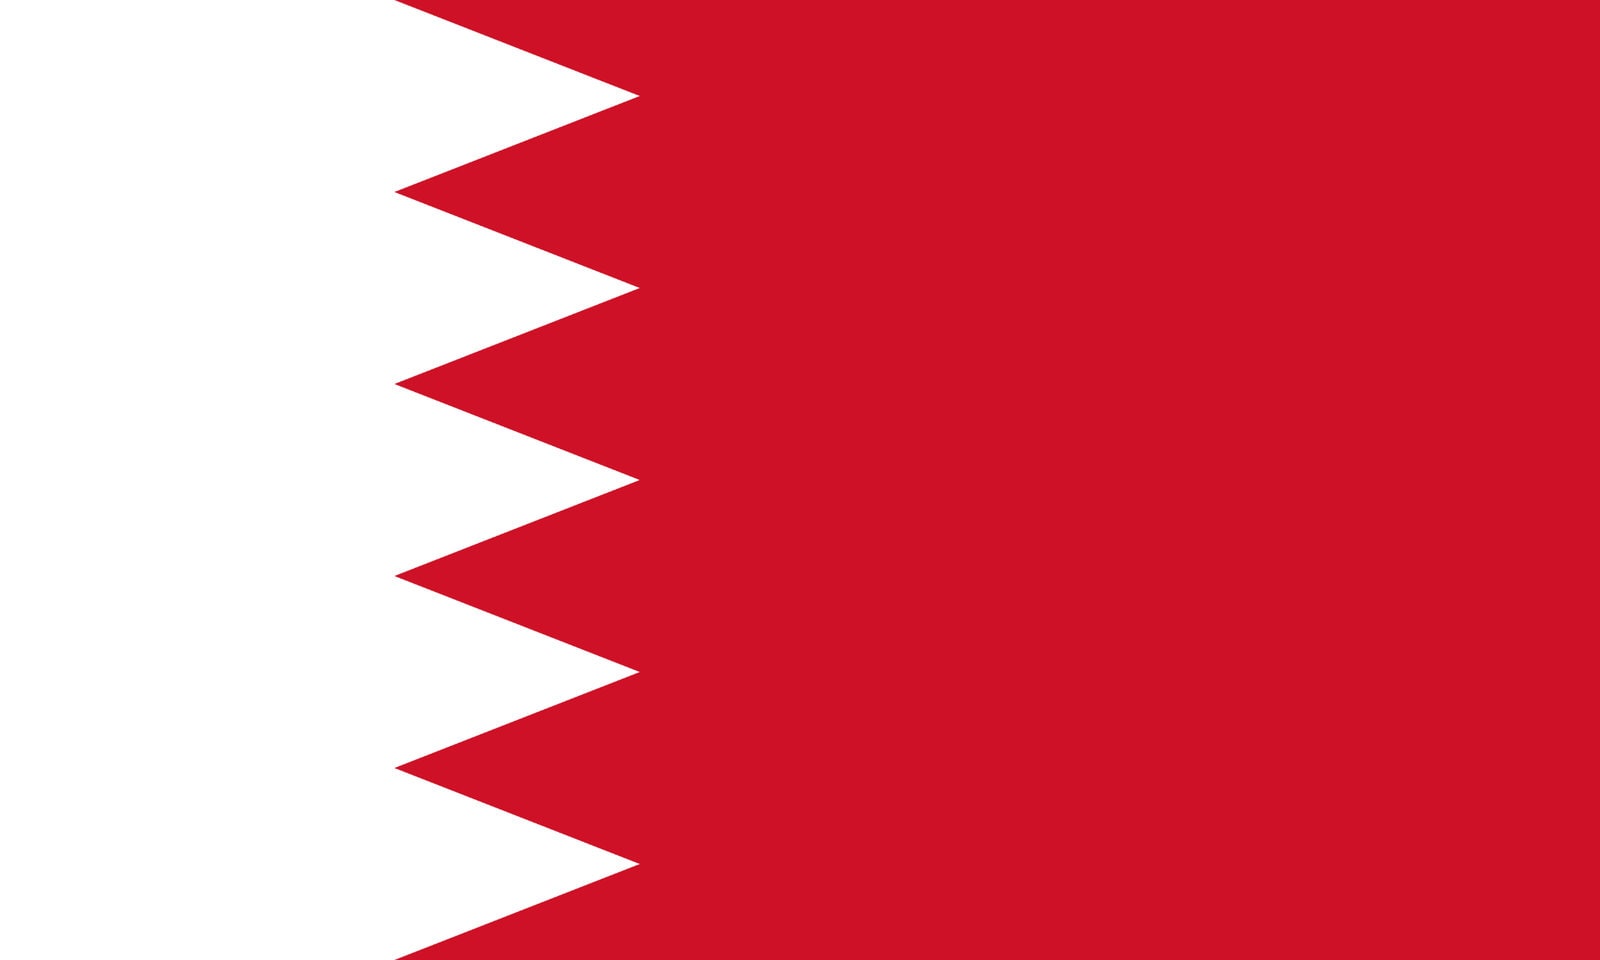 4” Bahraini Flag Sticker Decal Self Adhesive Vinyl Bahrain BHR BH